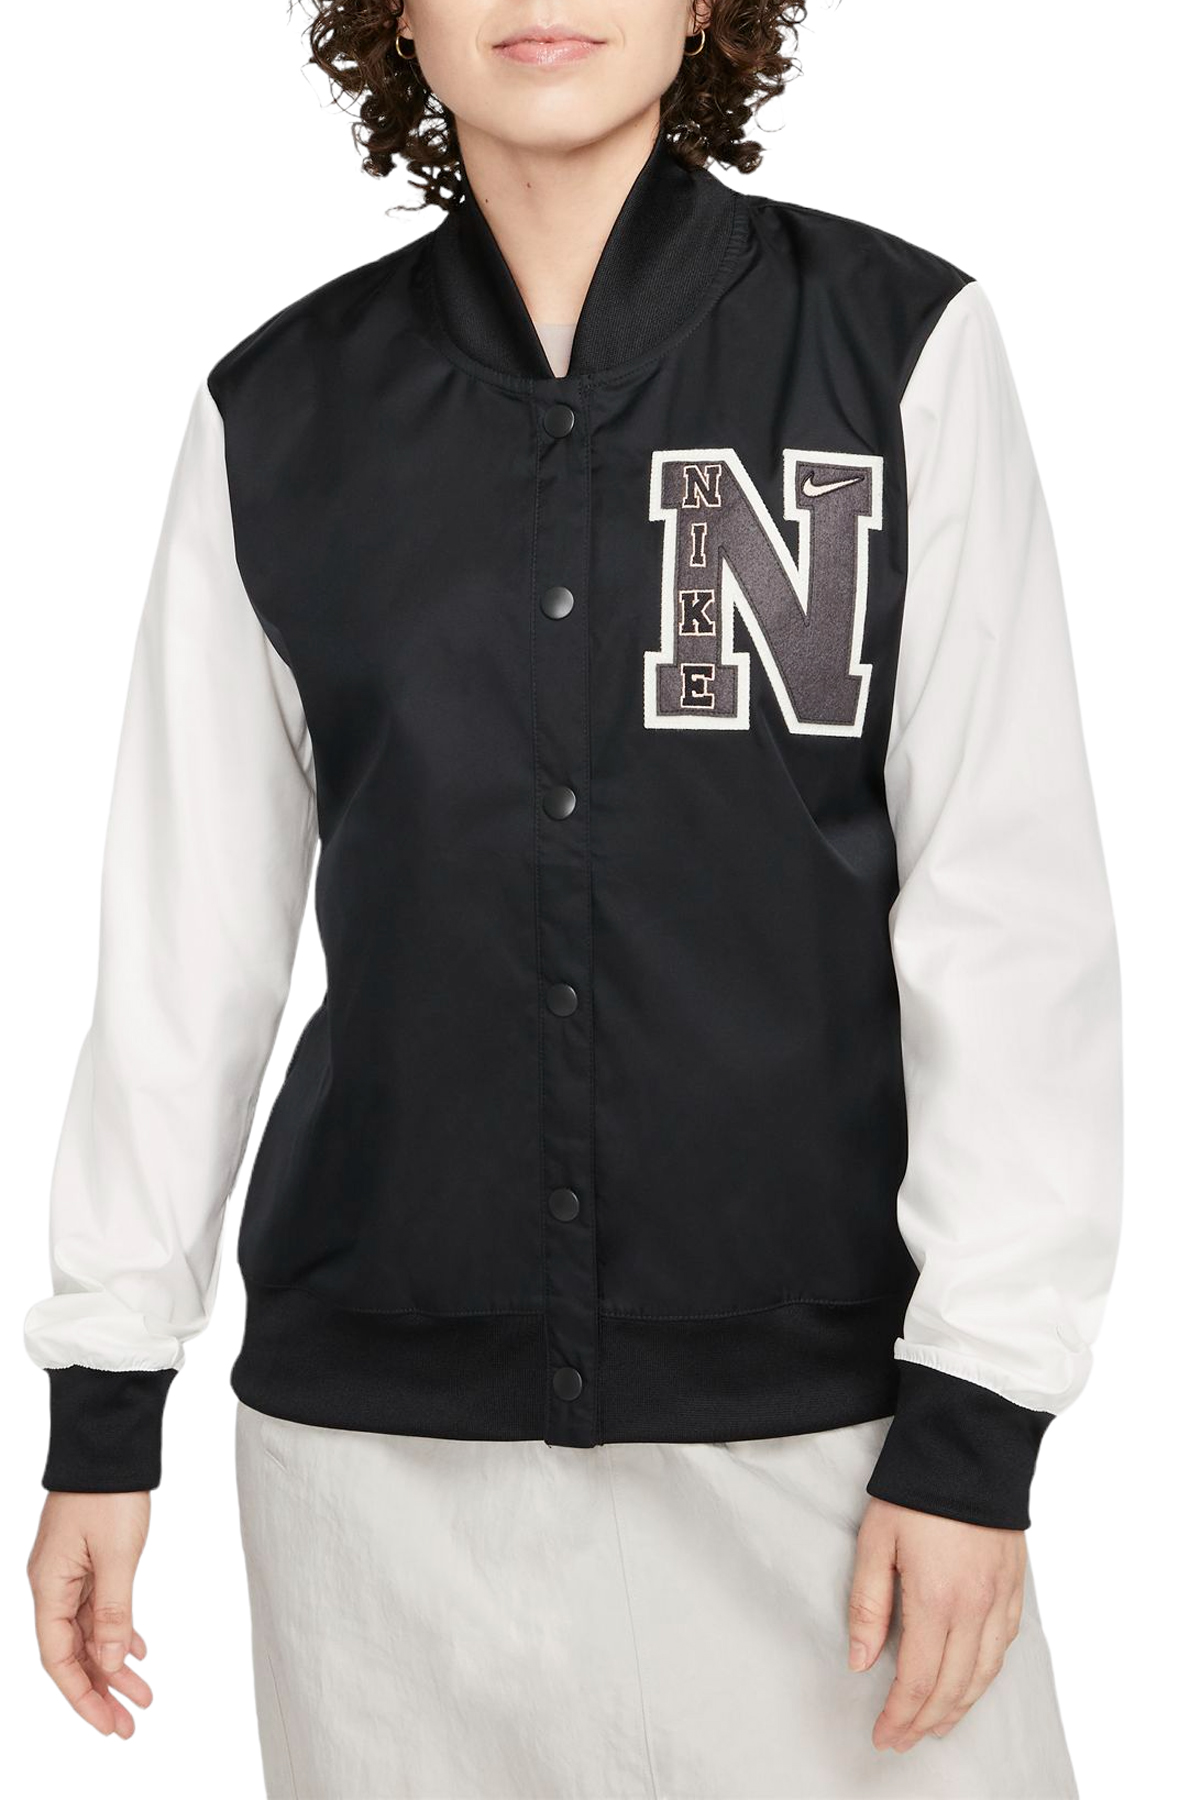 NIKE Sportswear Jacket 010 -